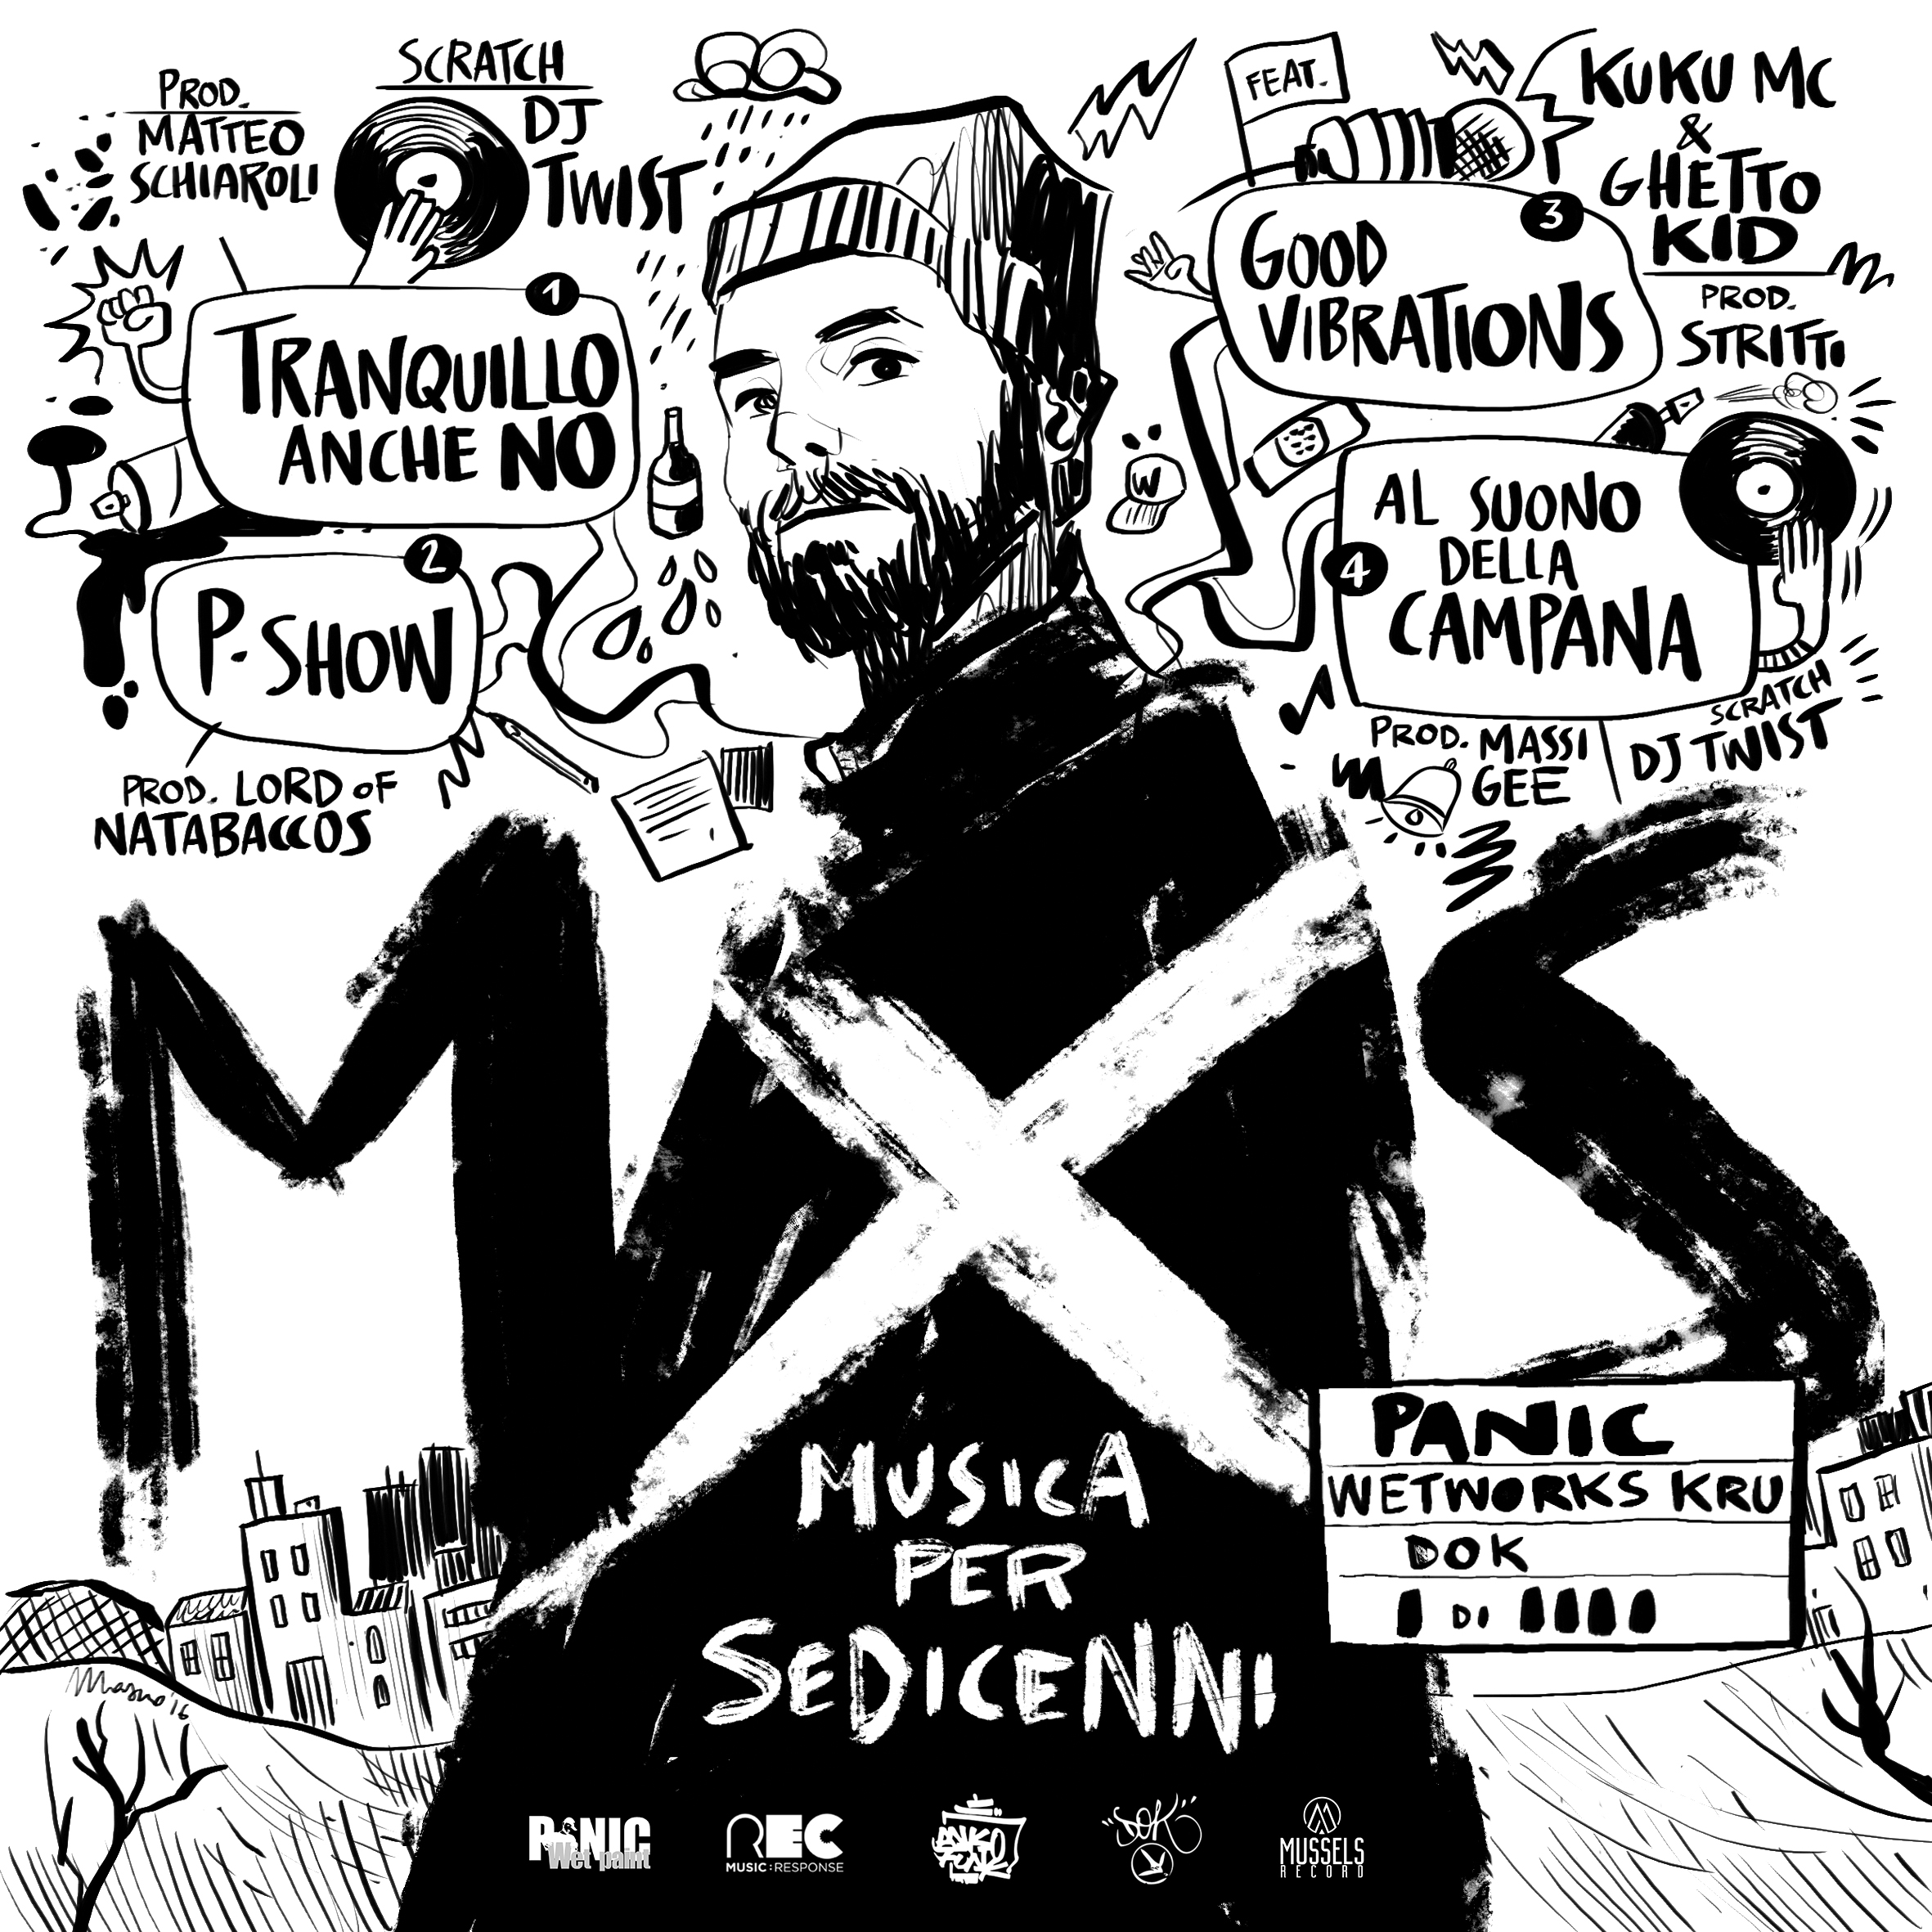 MXS – Musica per sedicenni – Panic